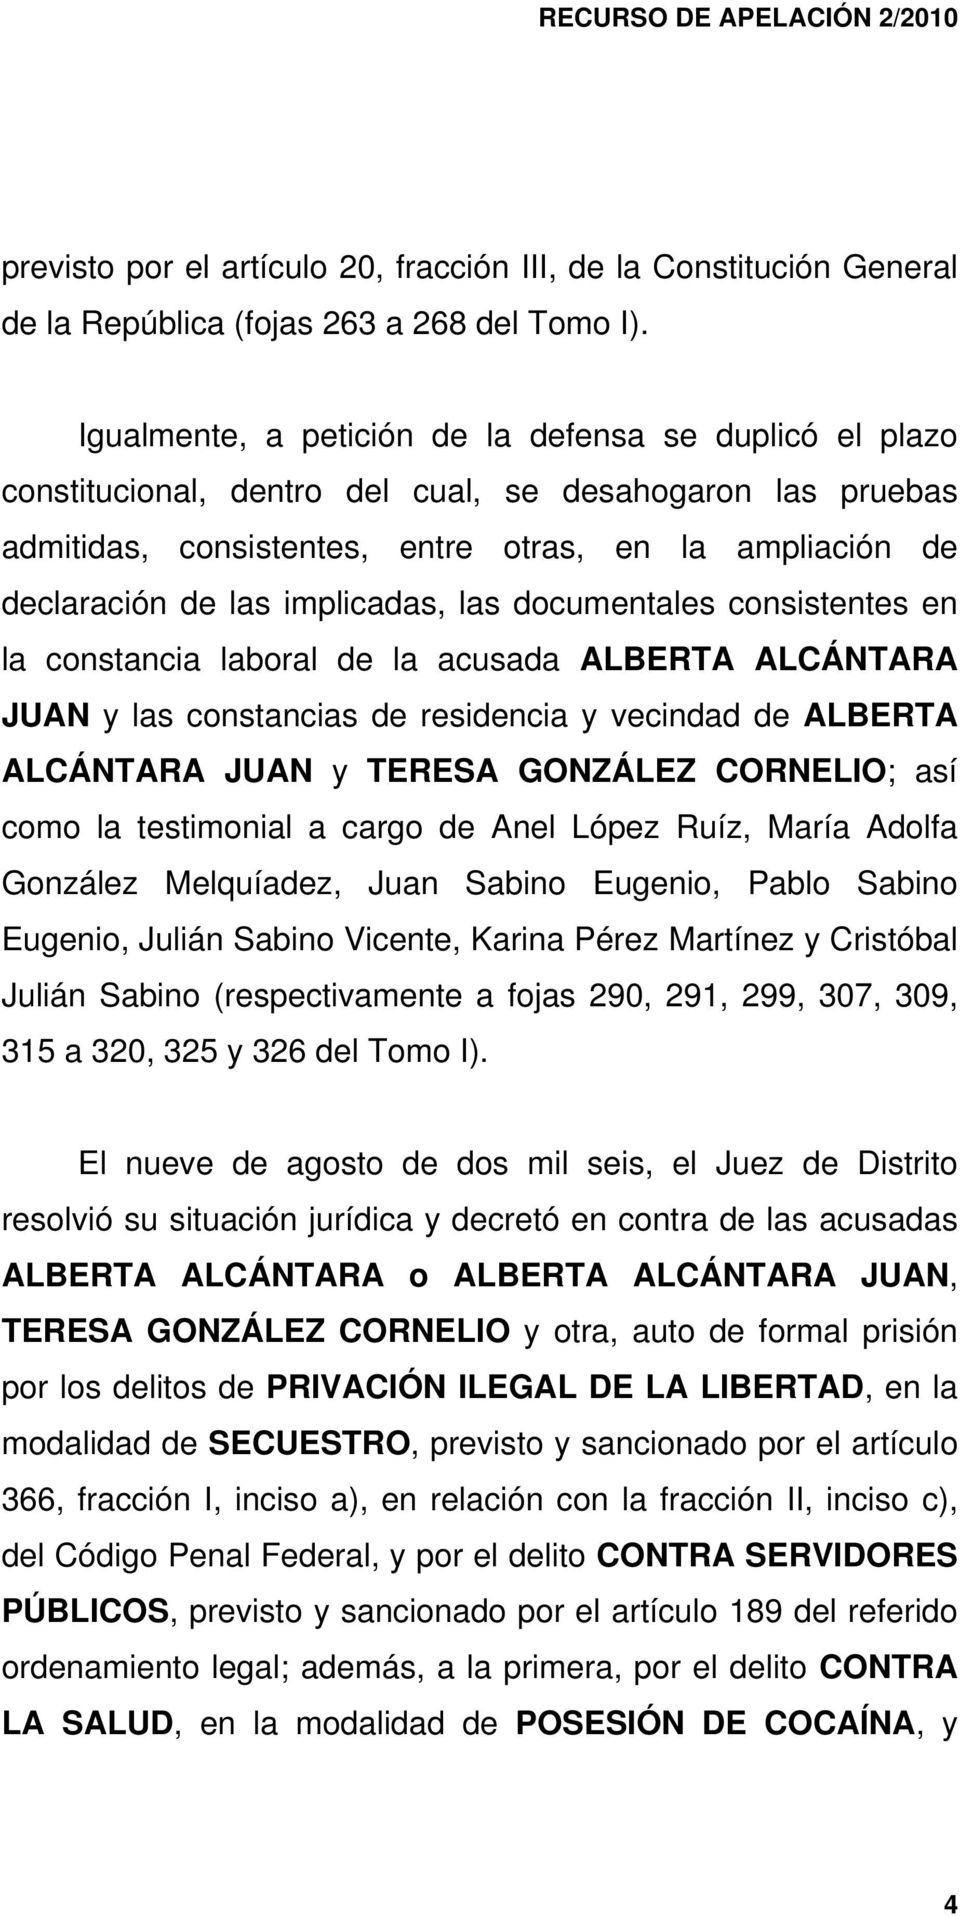 implicadas, las documentales consistentes en la constancia laboral de la acusada ALBERTA ALCÁNTARA JUAN y las constancias de residencia y vecindad de ALBERTA ALCÁNTARA JUAN y TERESA GONZÁLEZ